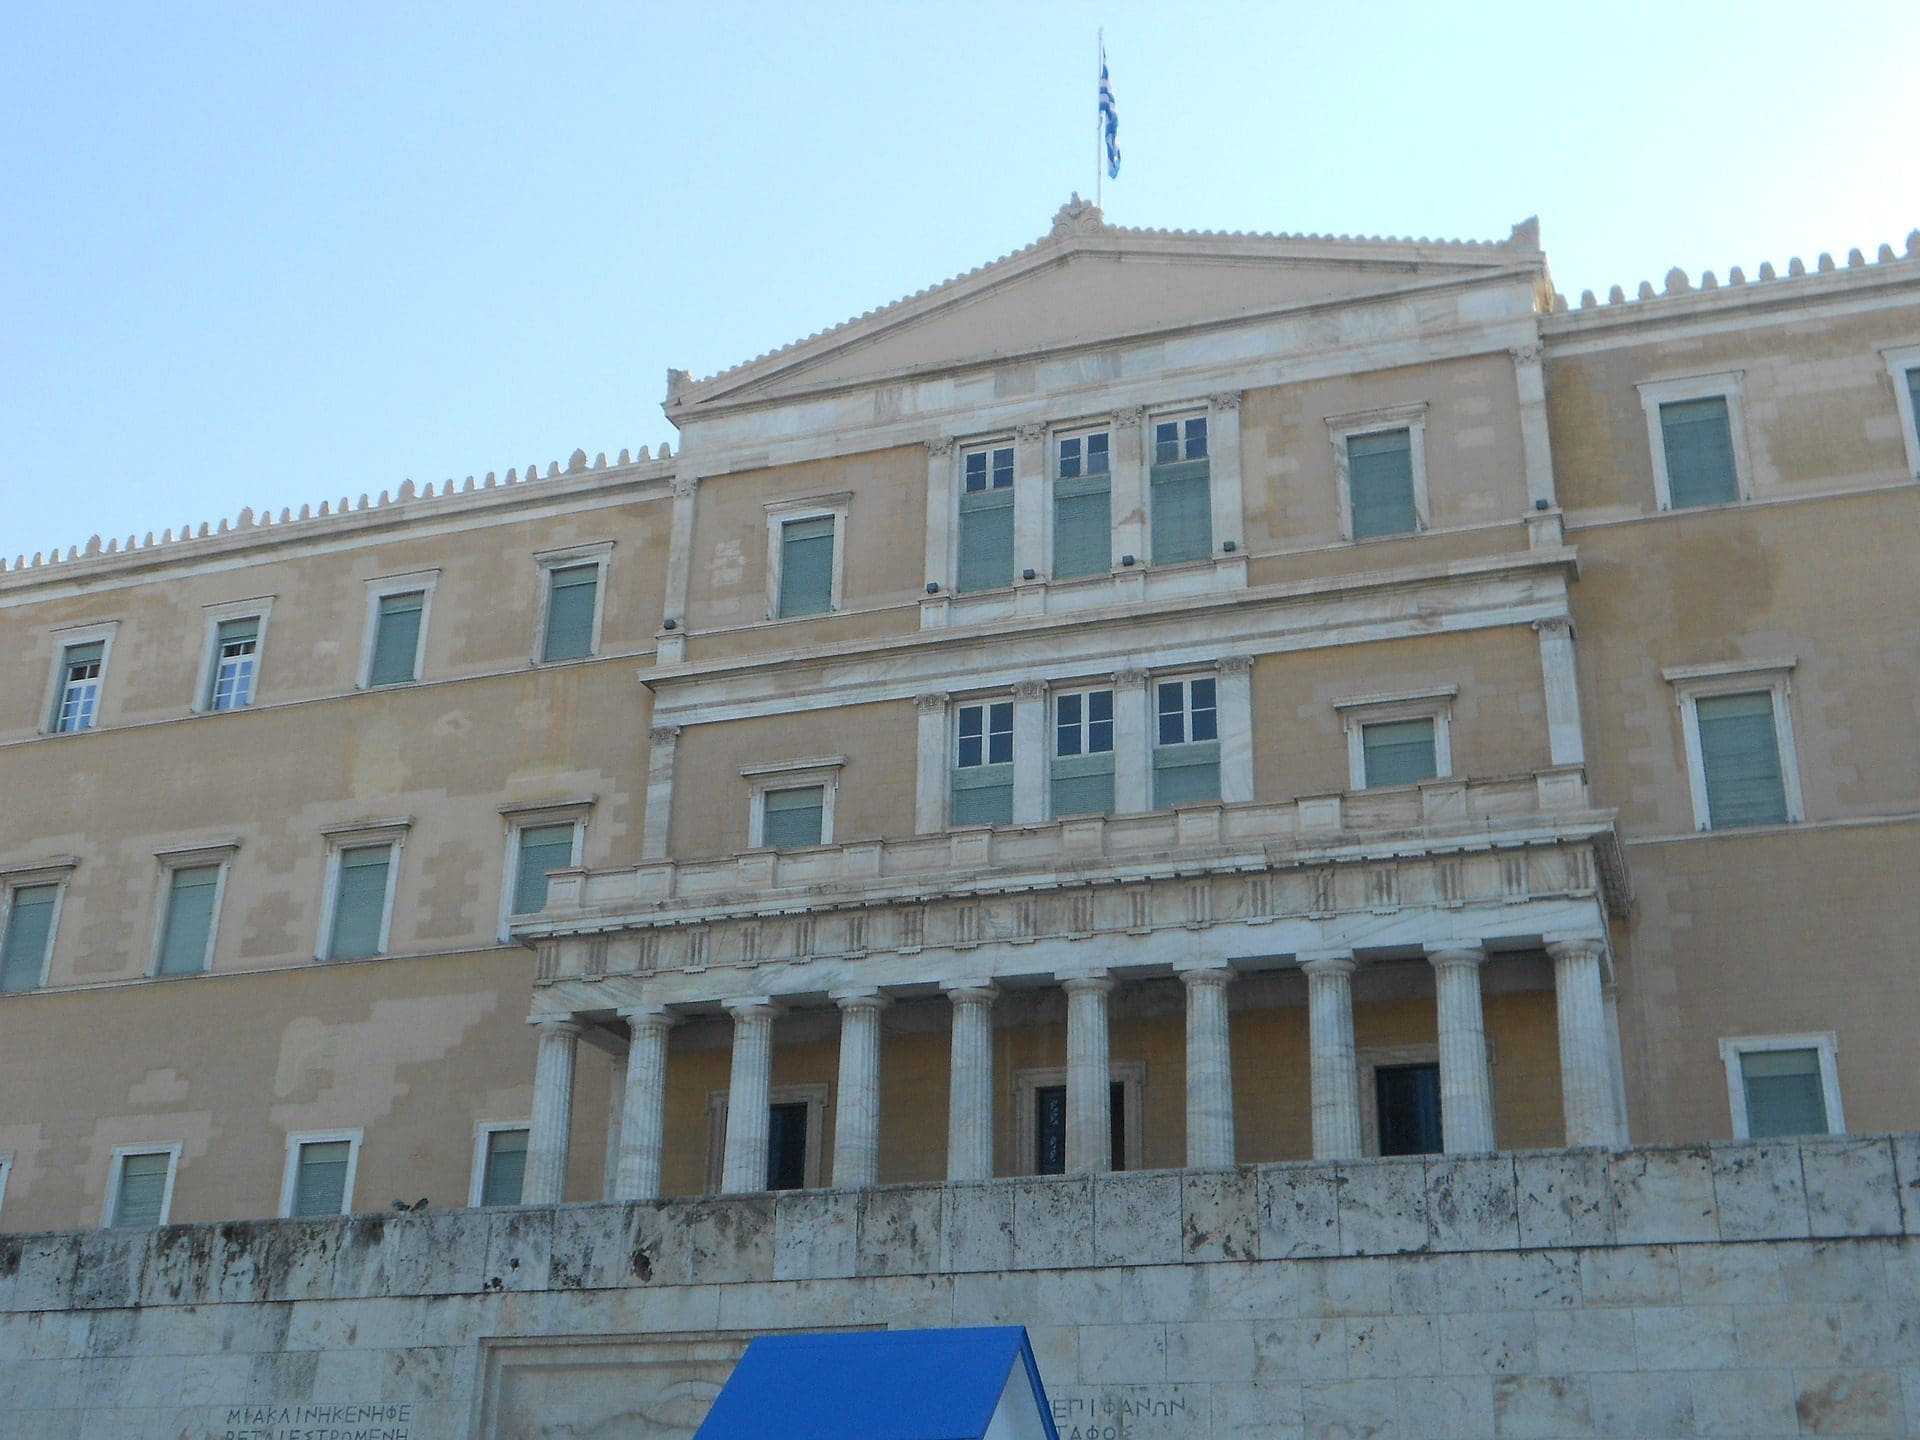 græske parlament